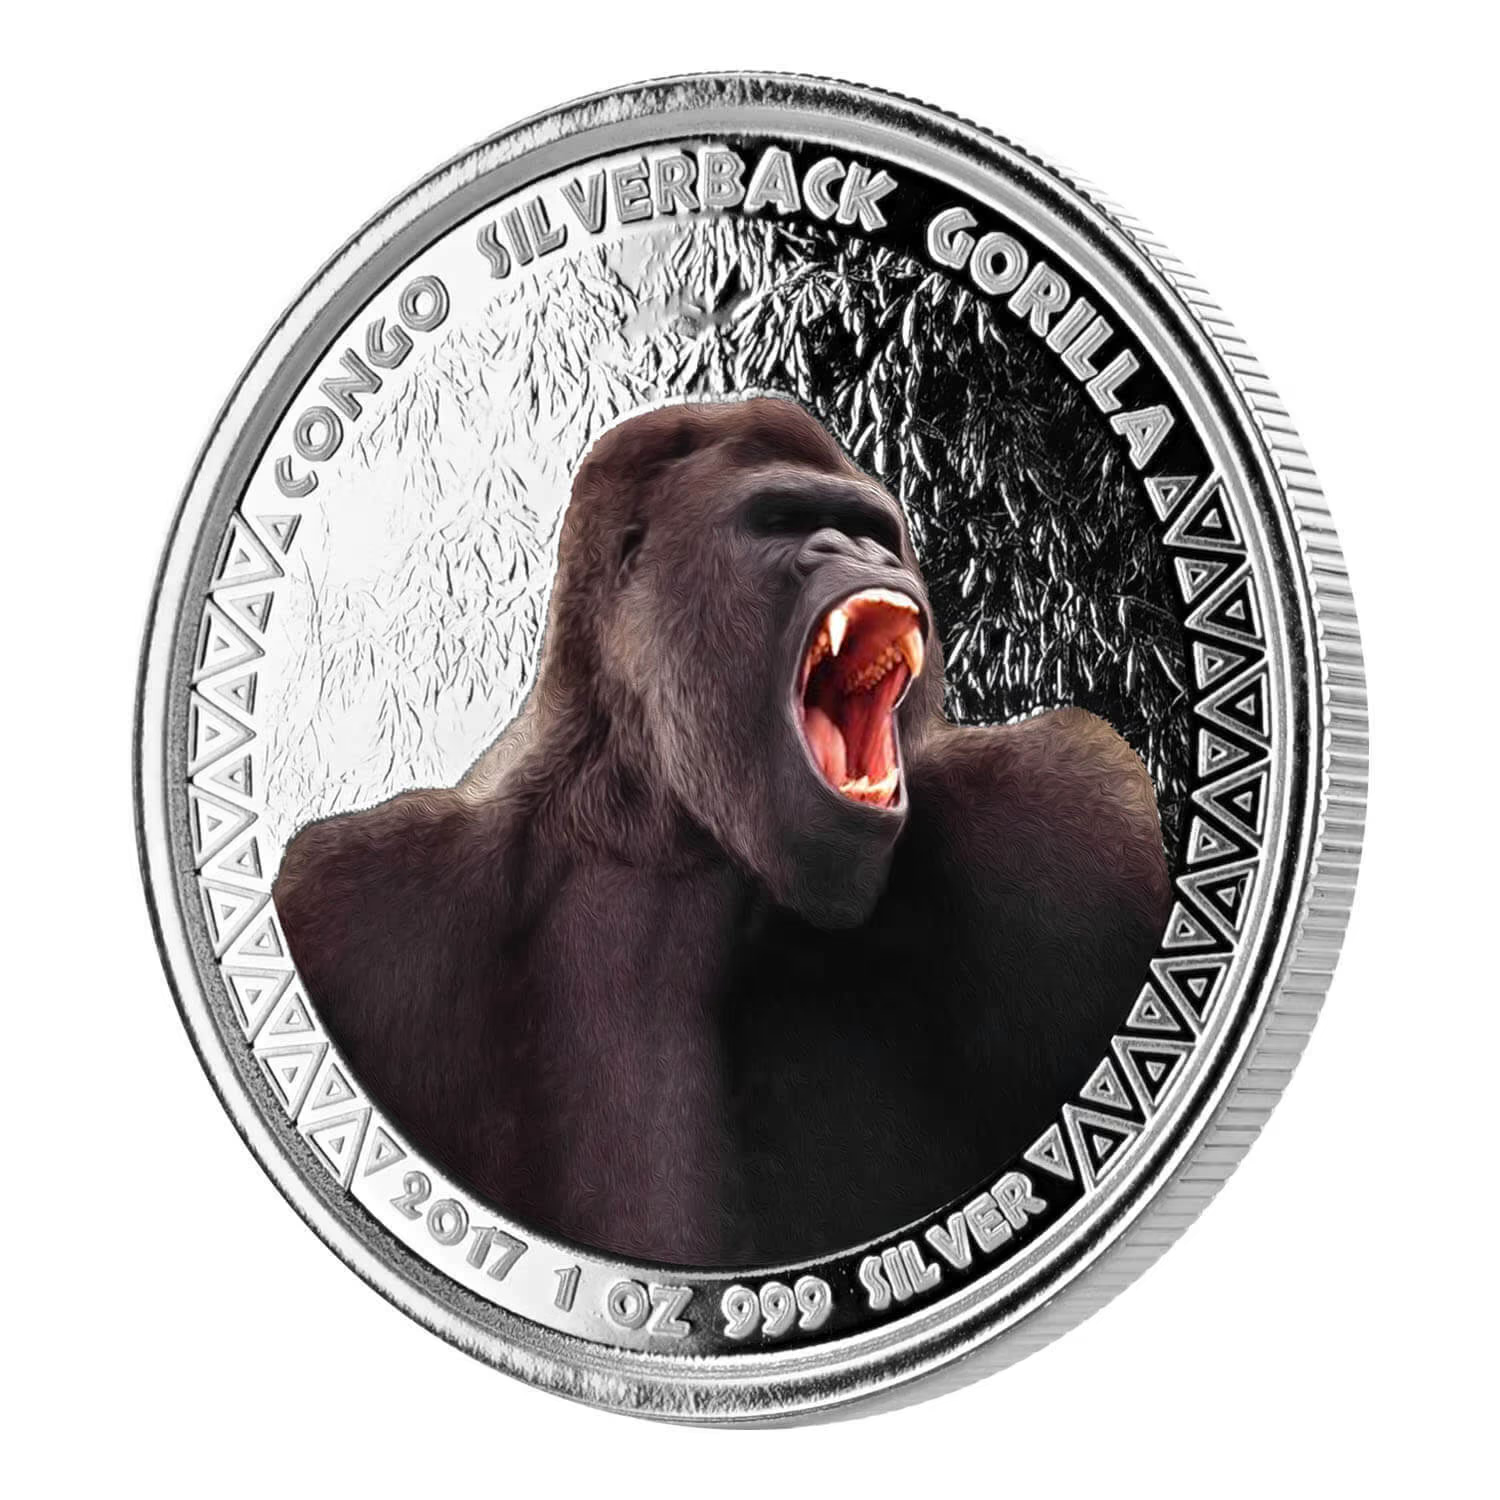 1 Oz Silver Coin 2017 5000 CFA Francs Congo Scottsdale Color Silverback Gorilla-classypw.com-1